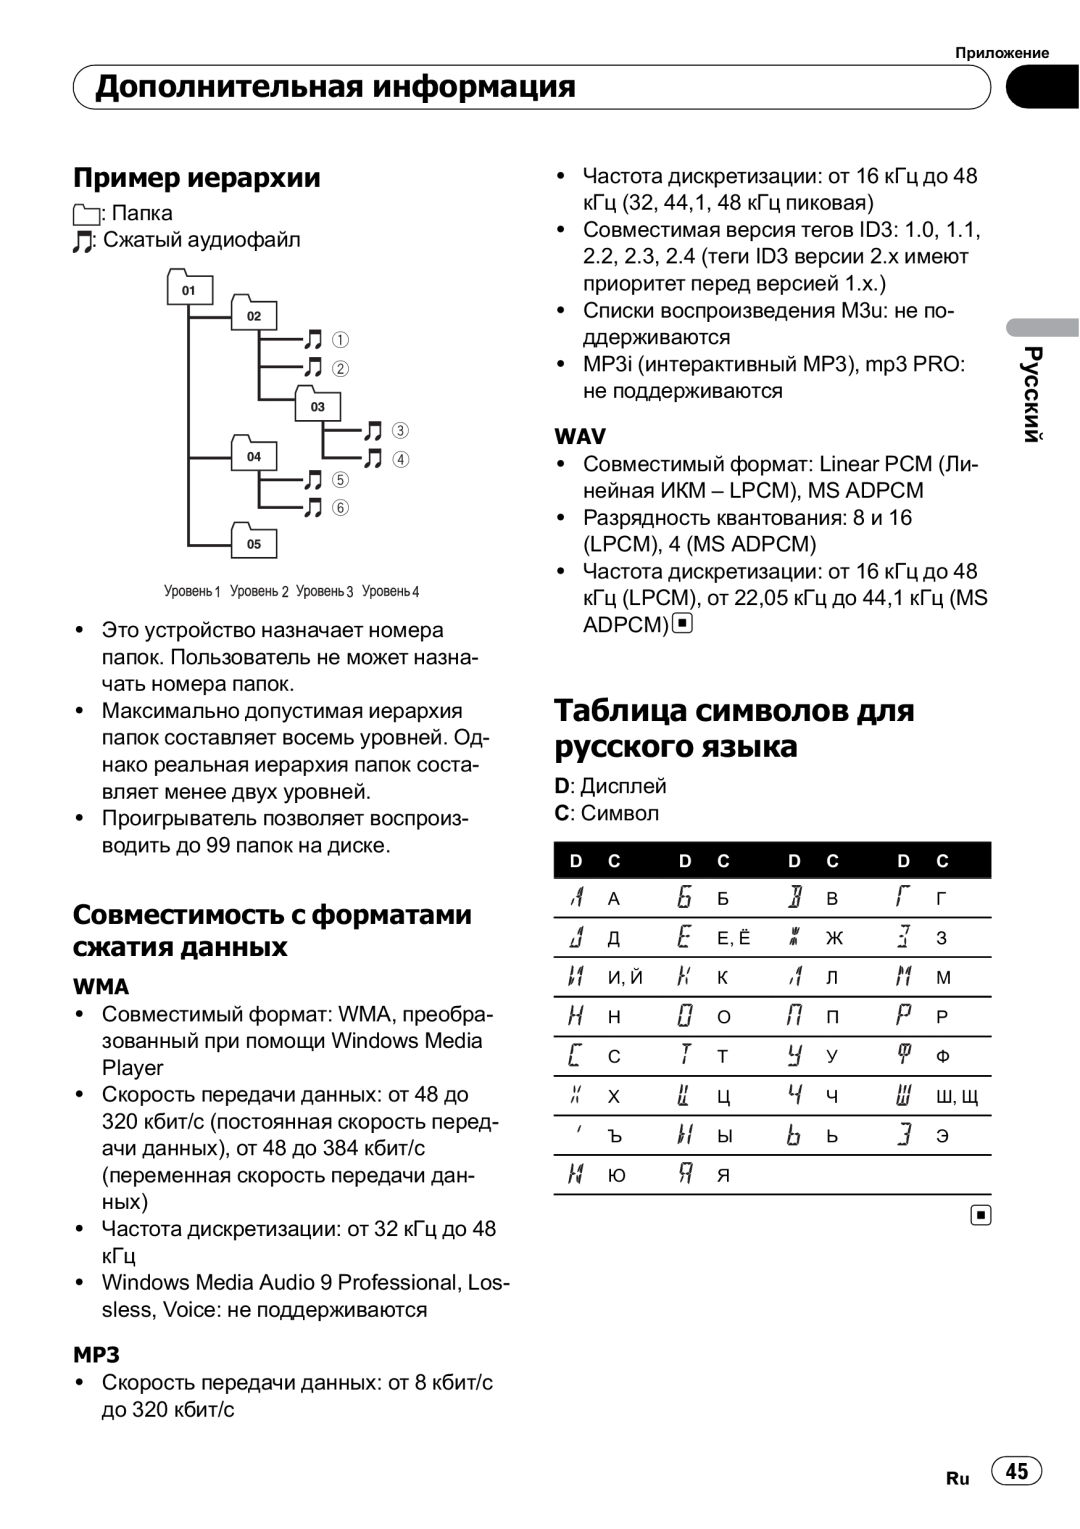 Pioneer DEH-200MP Таблица символов для русского языка, Пример иерархии, Совместимость с форматами сжатия данных, Русский 